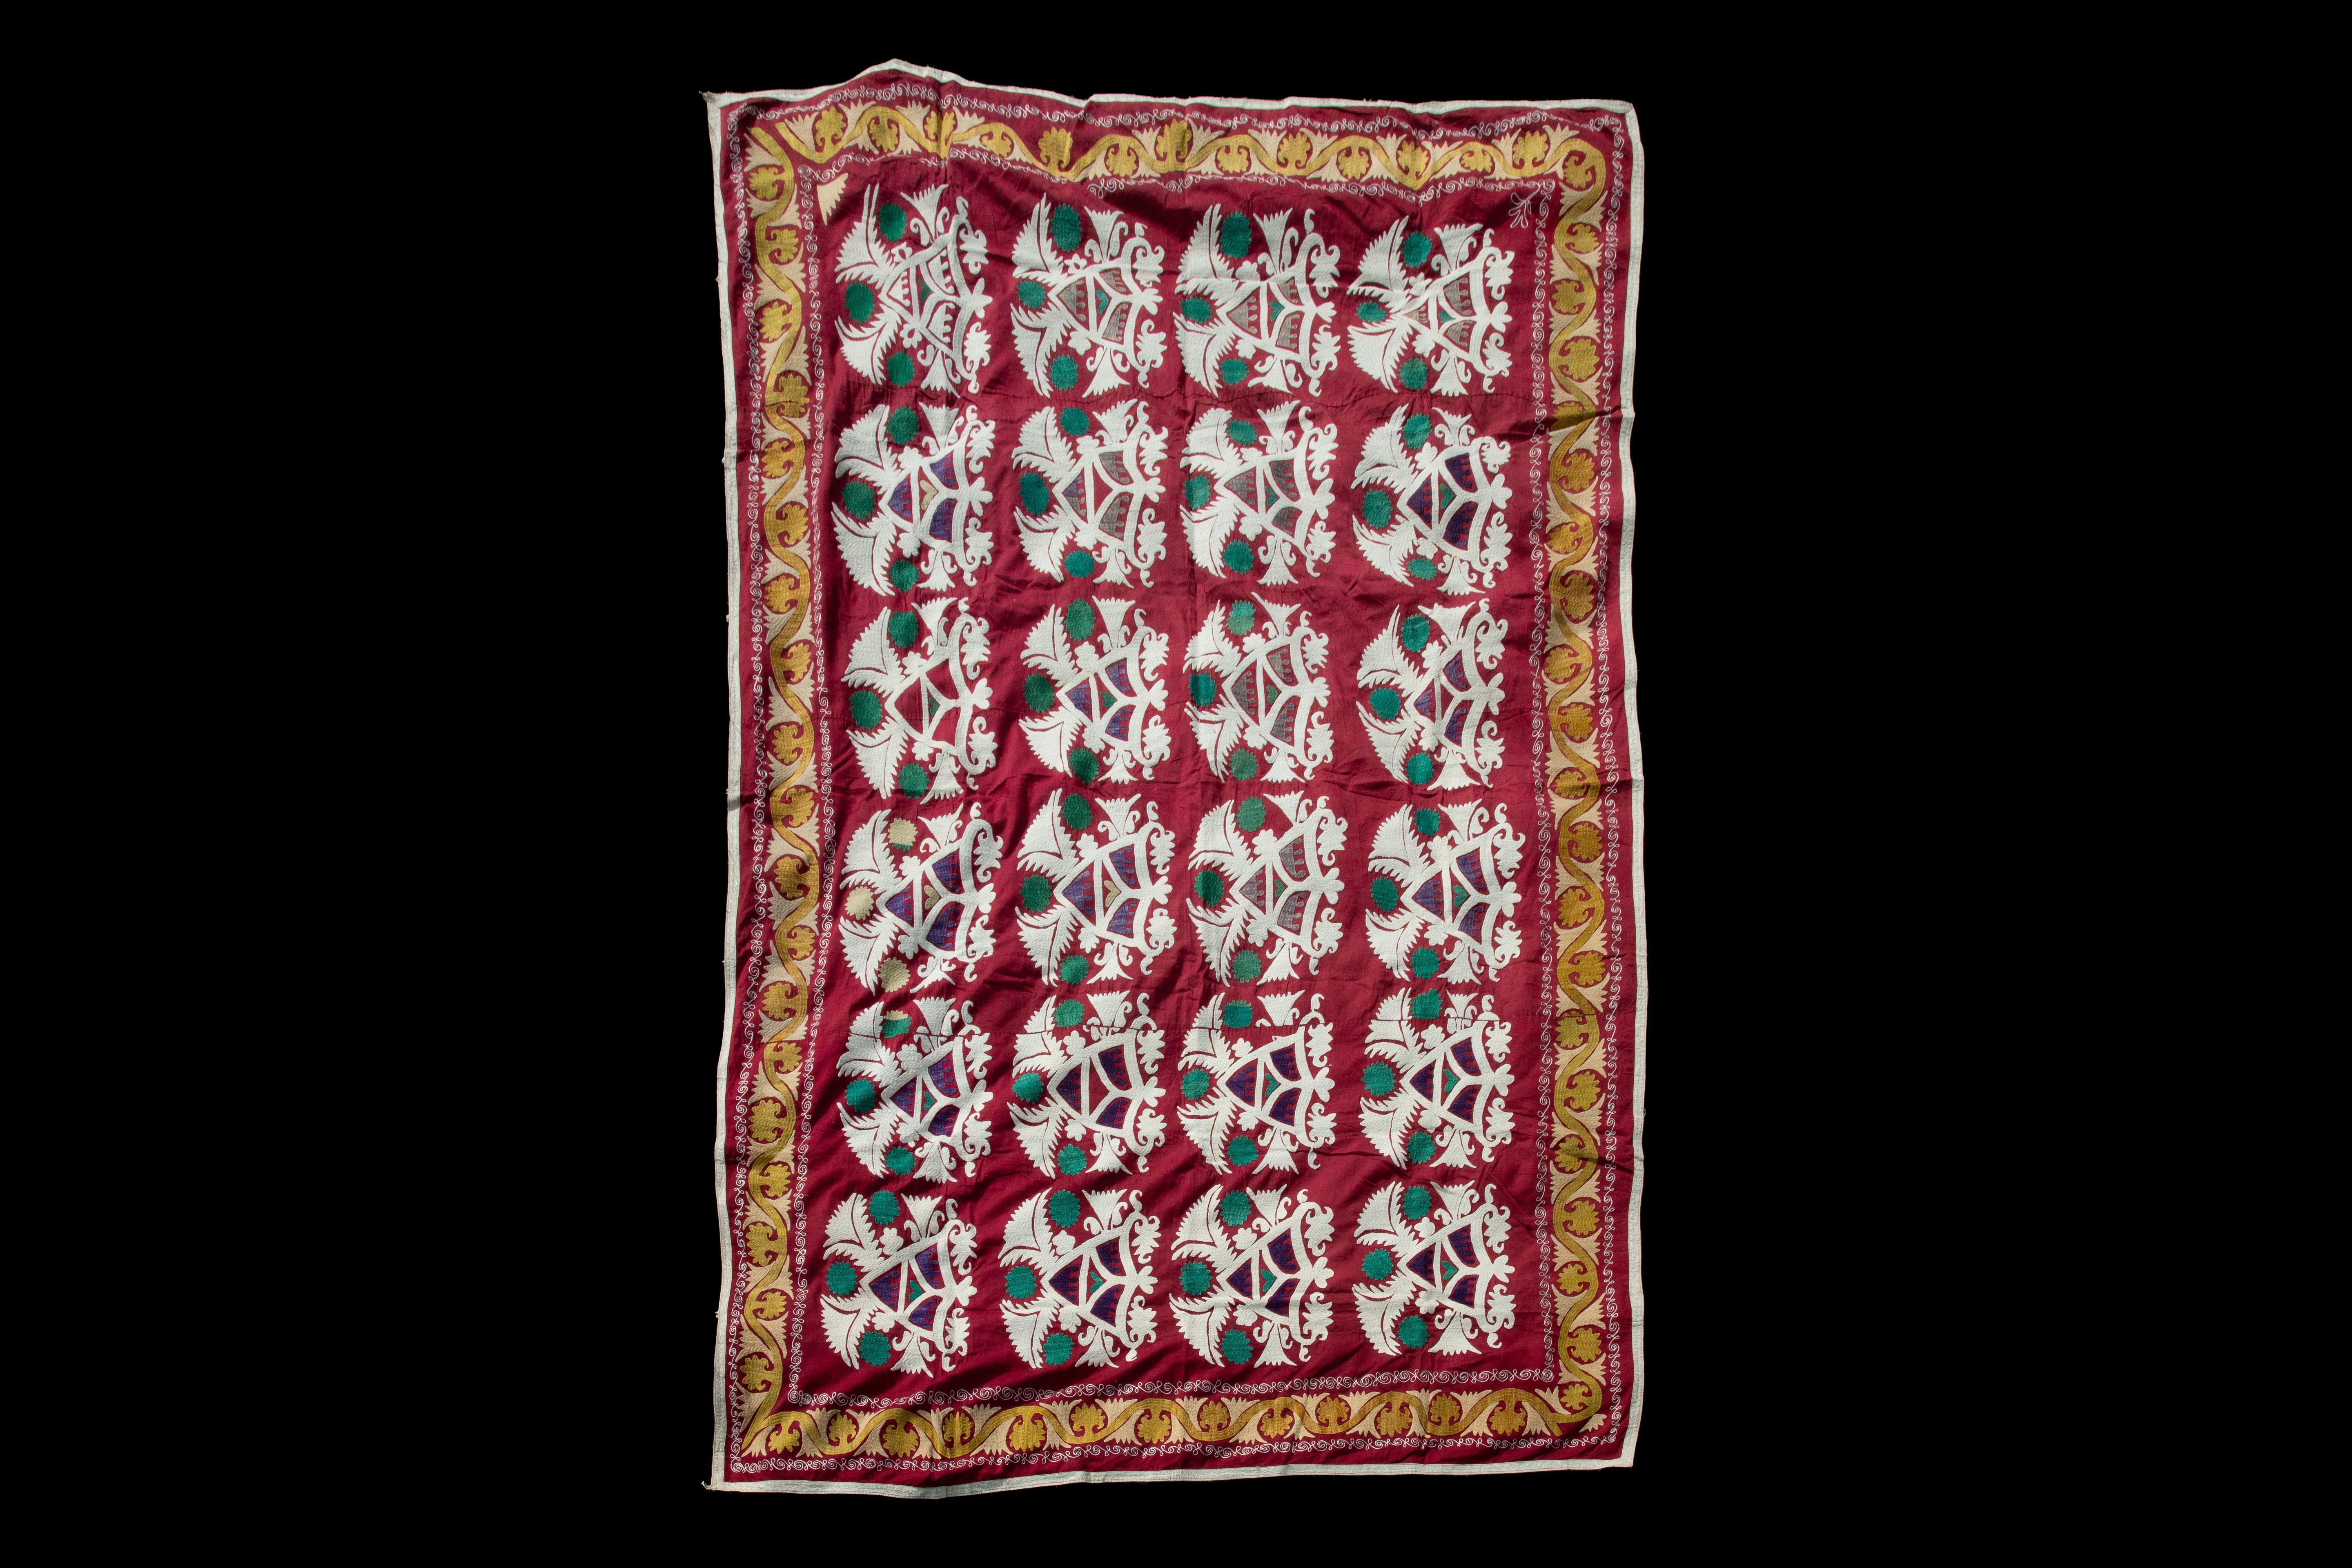 Handgefertigte Vintage-Baumwoll-Suzani, rot, weiß und orange

Reich handbestickter usbekischer Suzani in ikonischem Schwarz und Kupferorange.
Die von der Sonne gebrochenen Blumen sind mit schwarzen Schriftrollen auf natürlicher Baumwolle